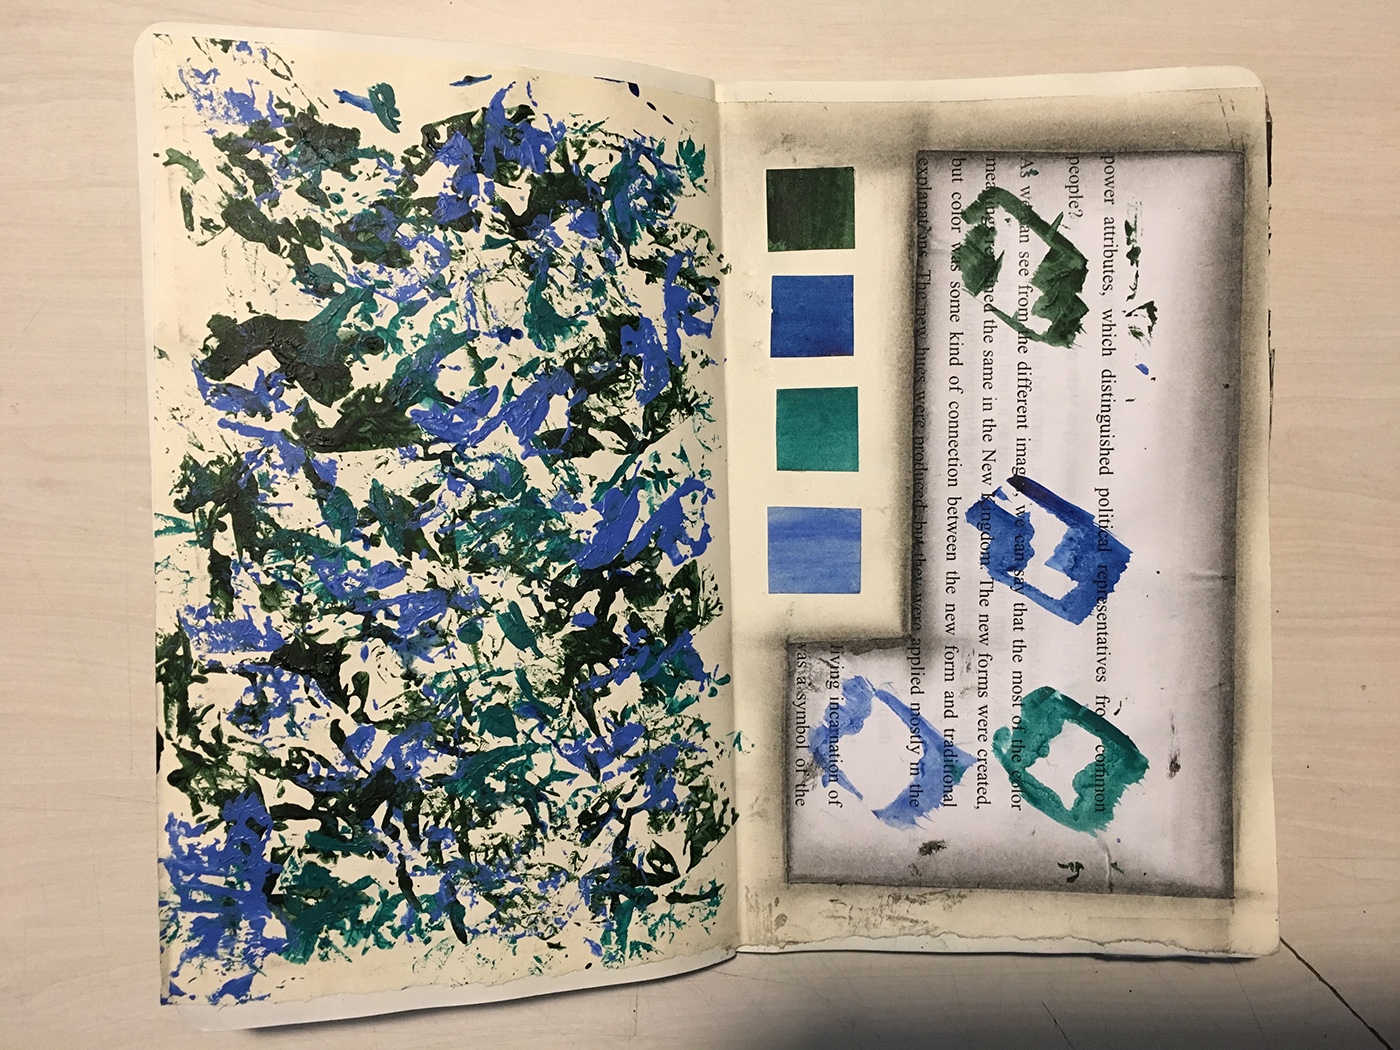 Moleskin Art journal sketchbook scrapbook collage